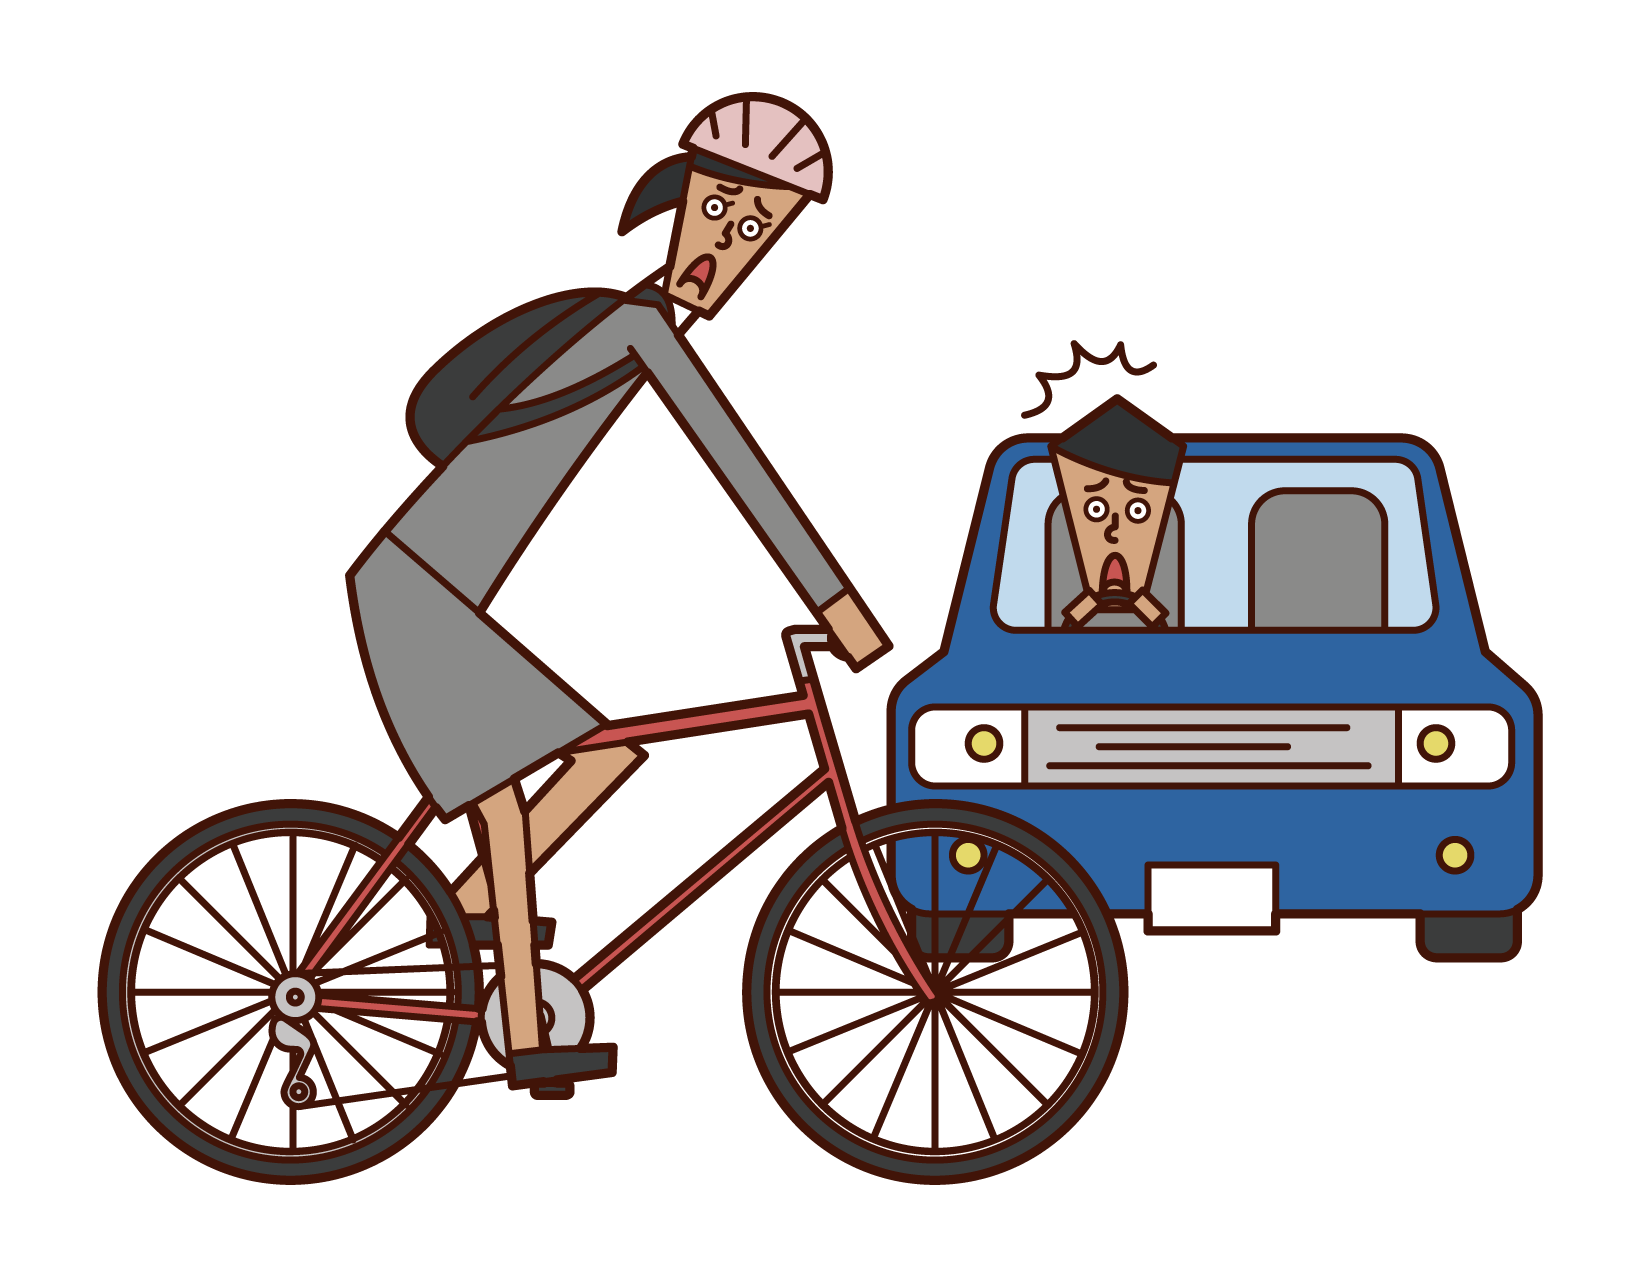 自転車と自動車の交通事故のイラスト フリーイラスト素材 Kukukeke ククケケ